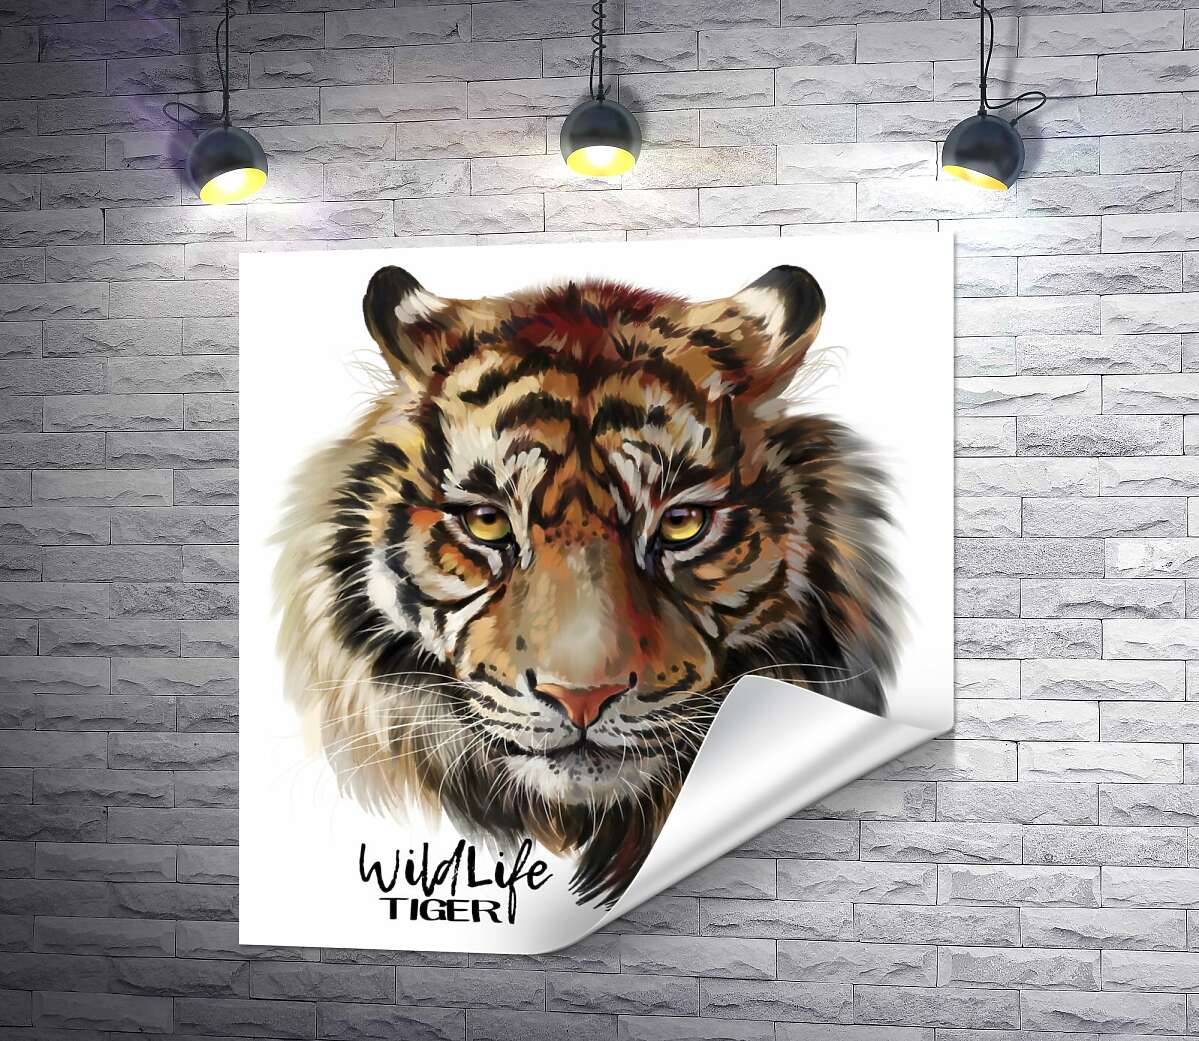 печать Пронзительный взгляд тигра рядом с надписью "wildlife tiger"